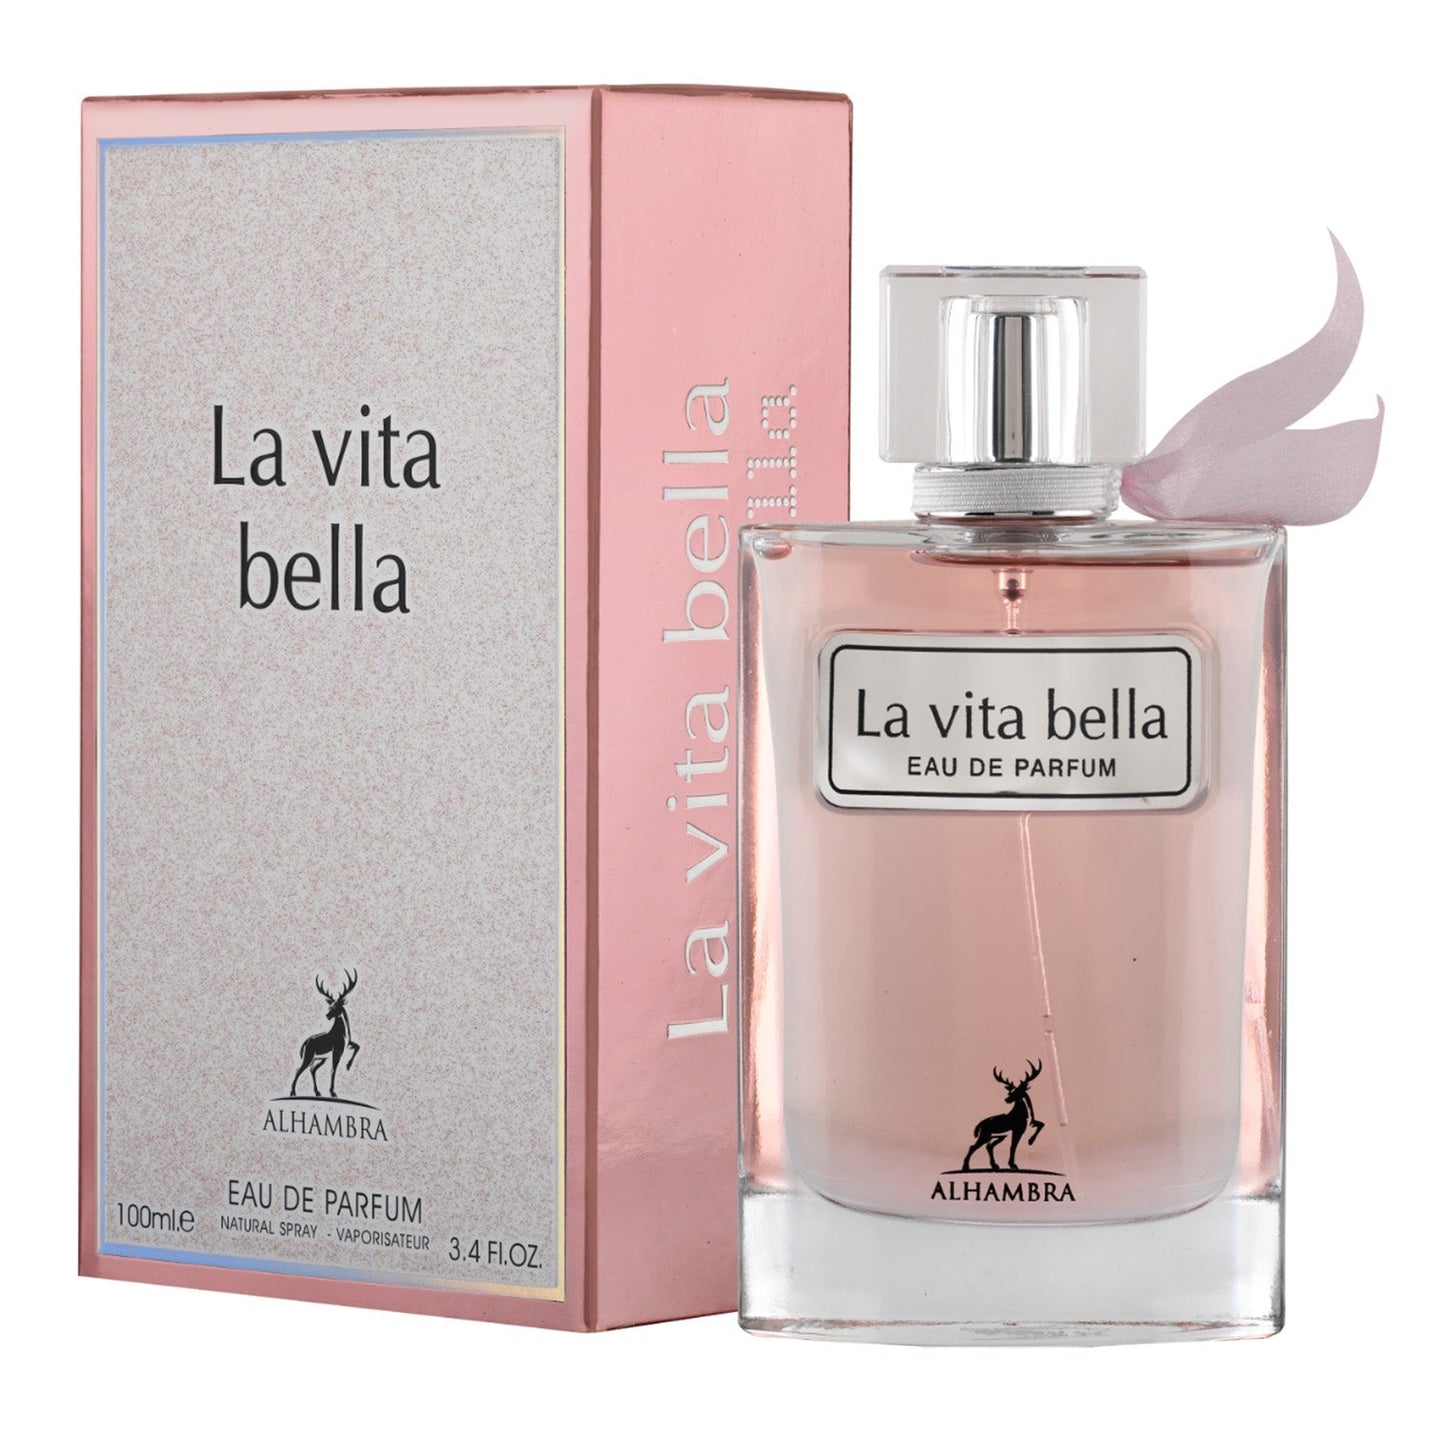 La Vita Bella Eau De Parfum 100ml Alhambra